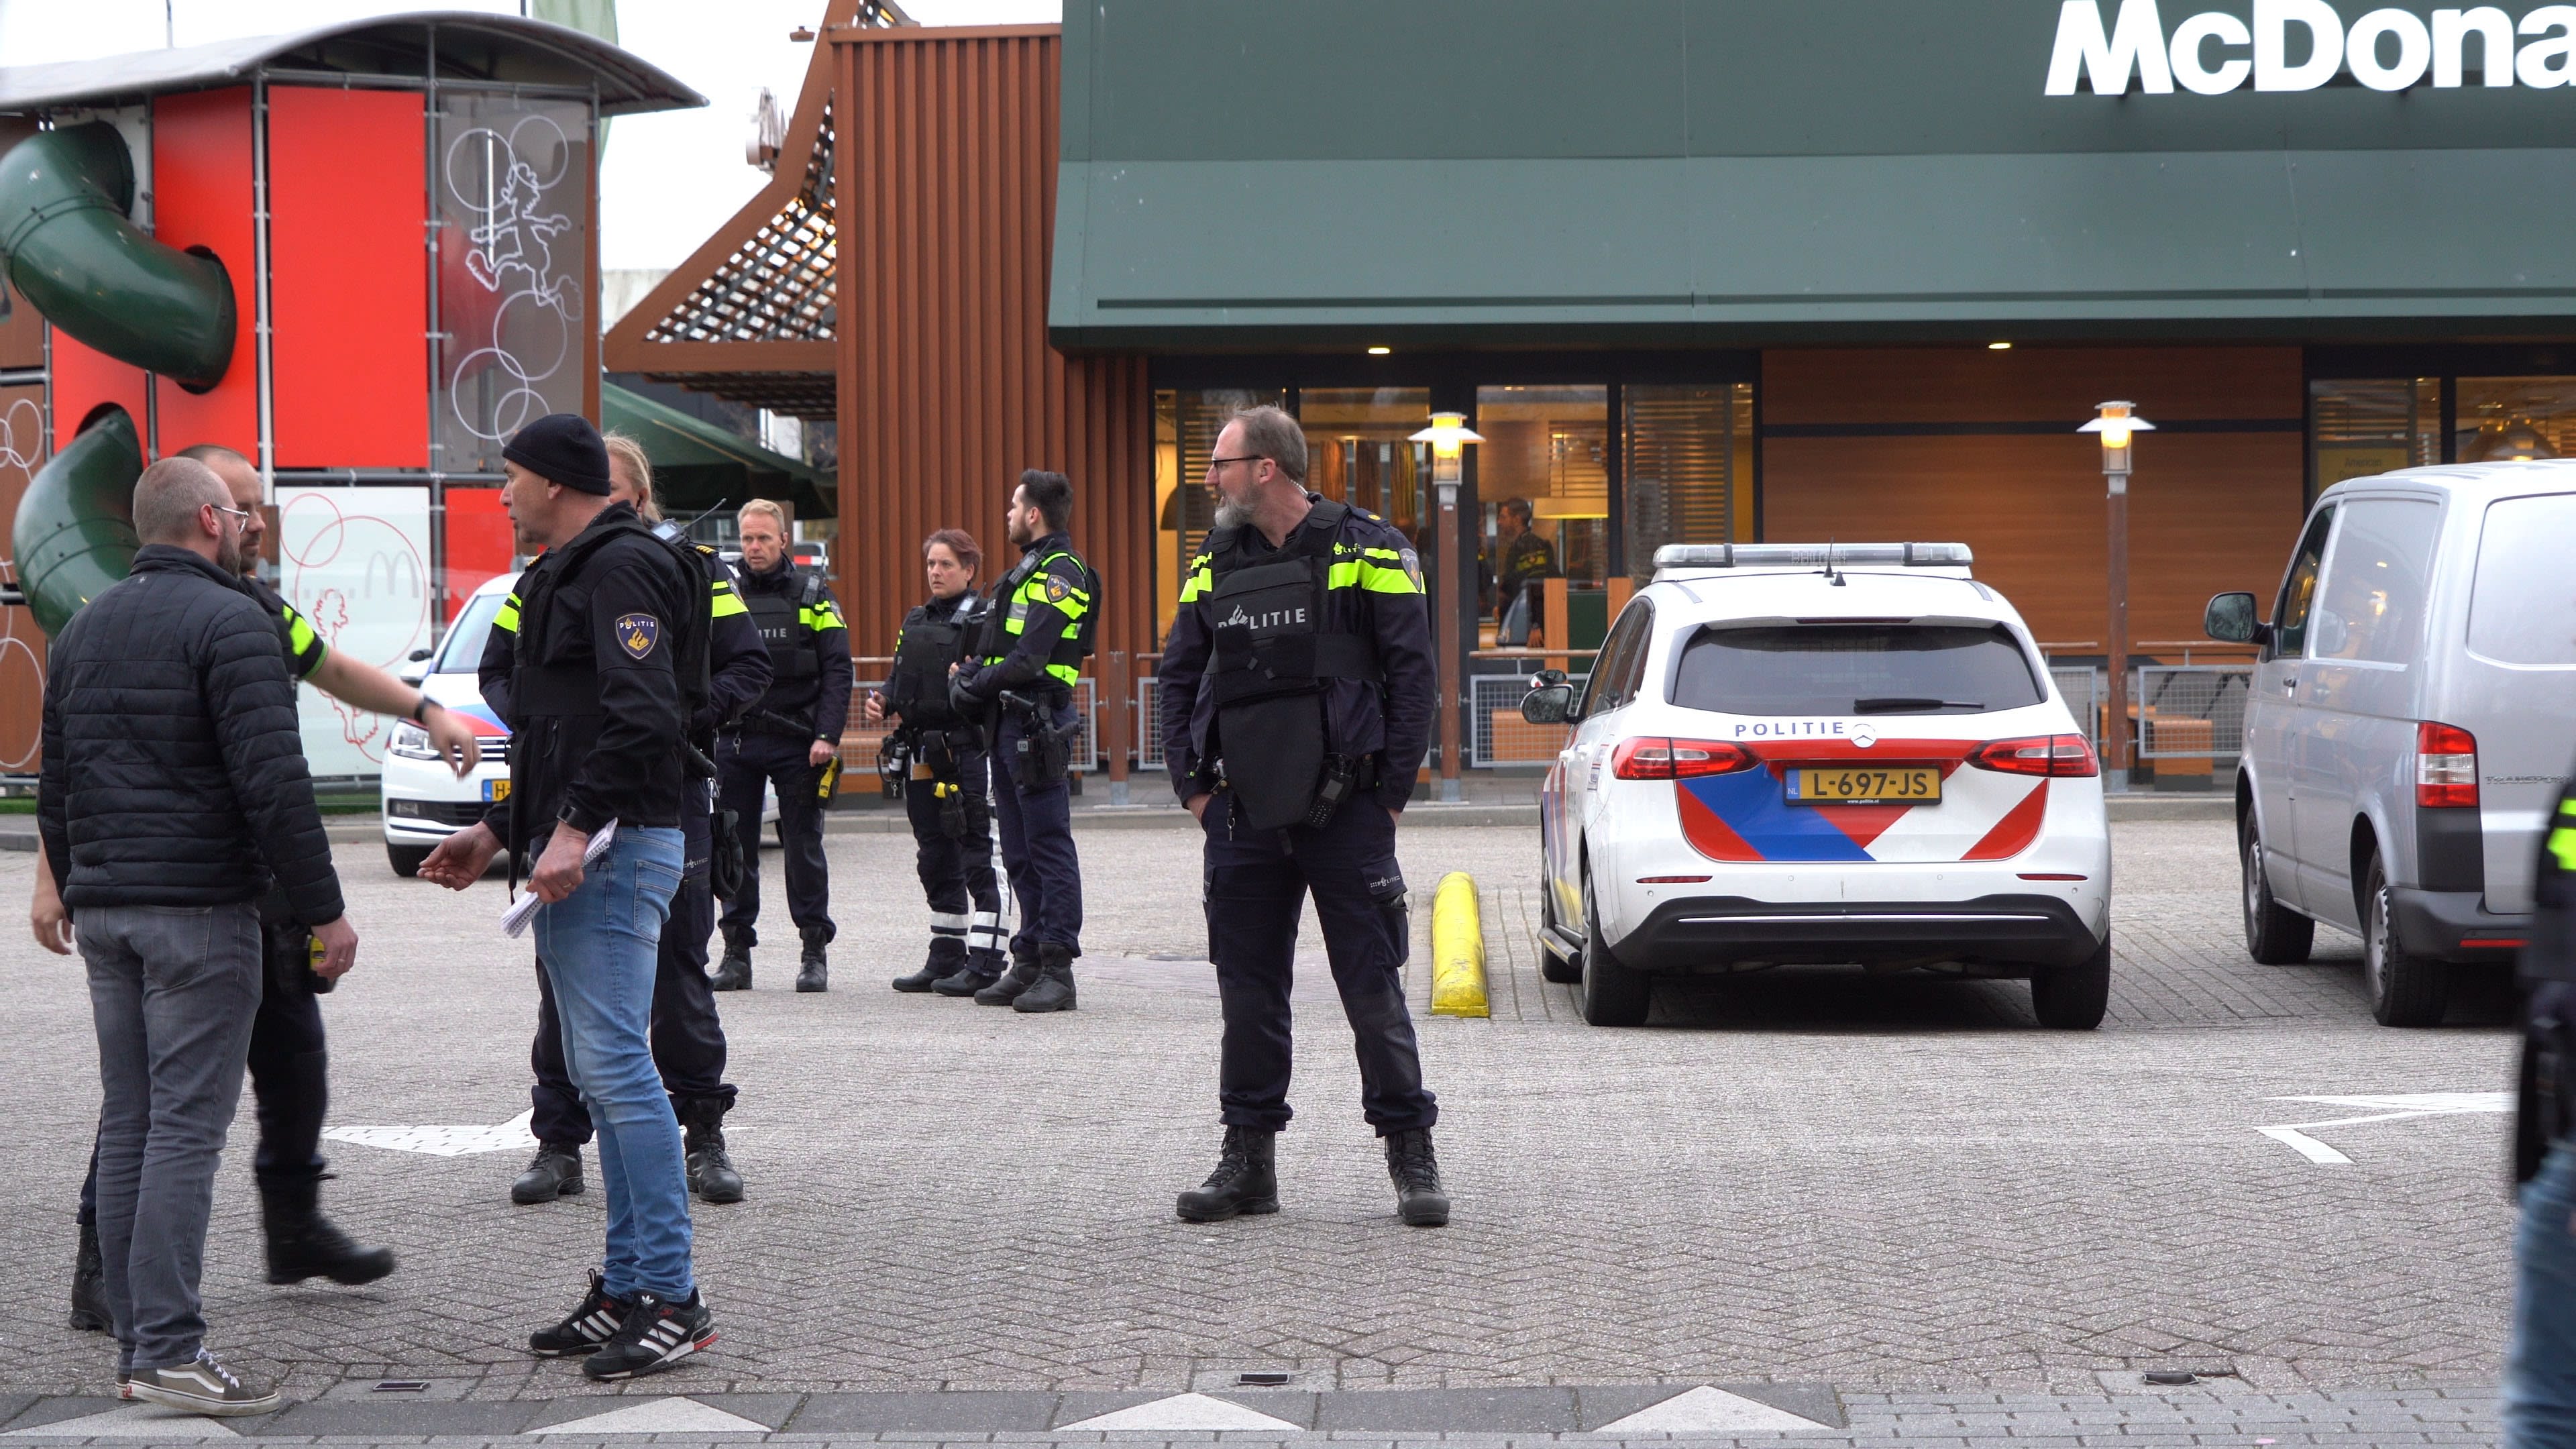 McDonald's Zwolle opent deuren weer na dodelijke schietpartij